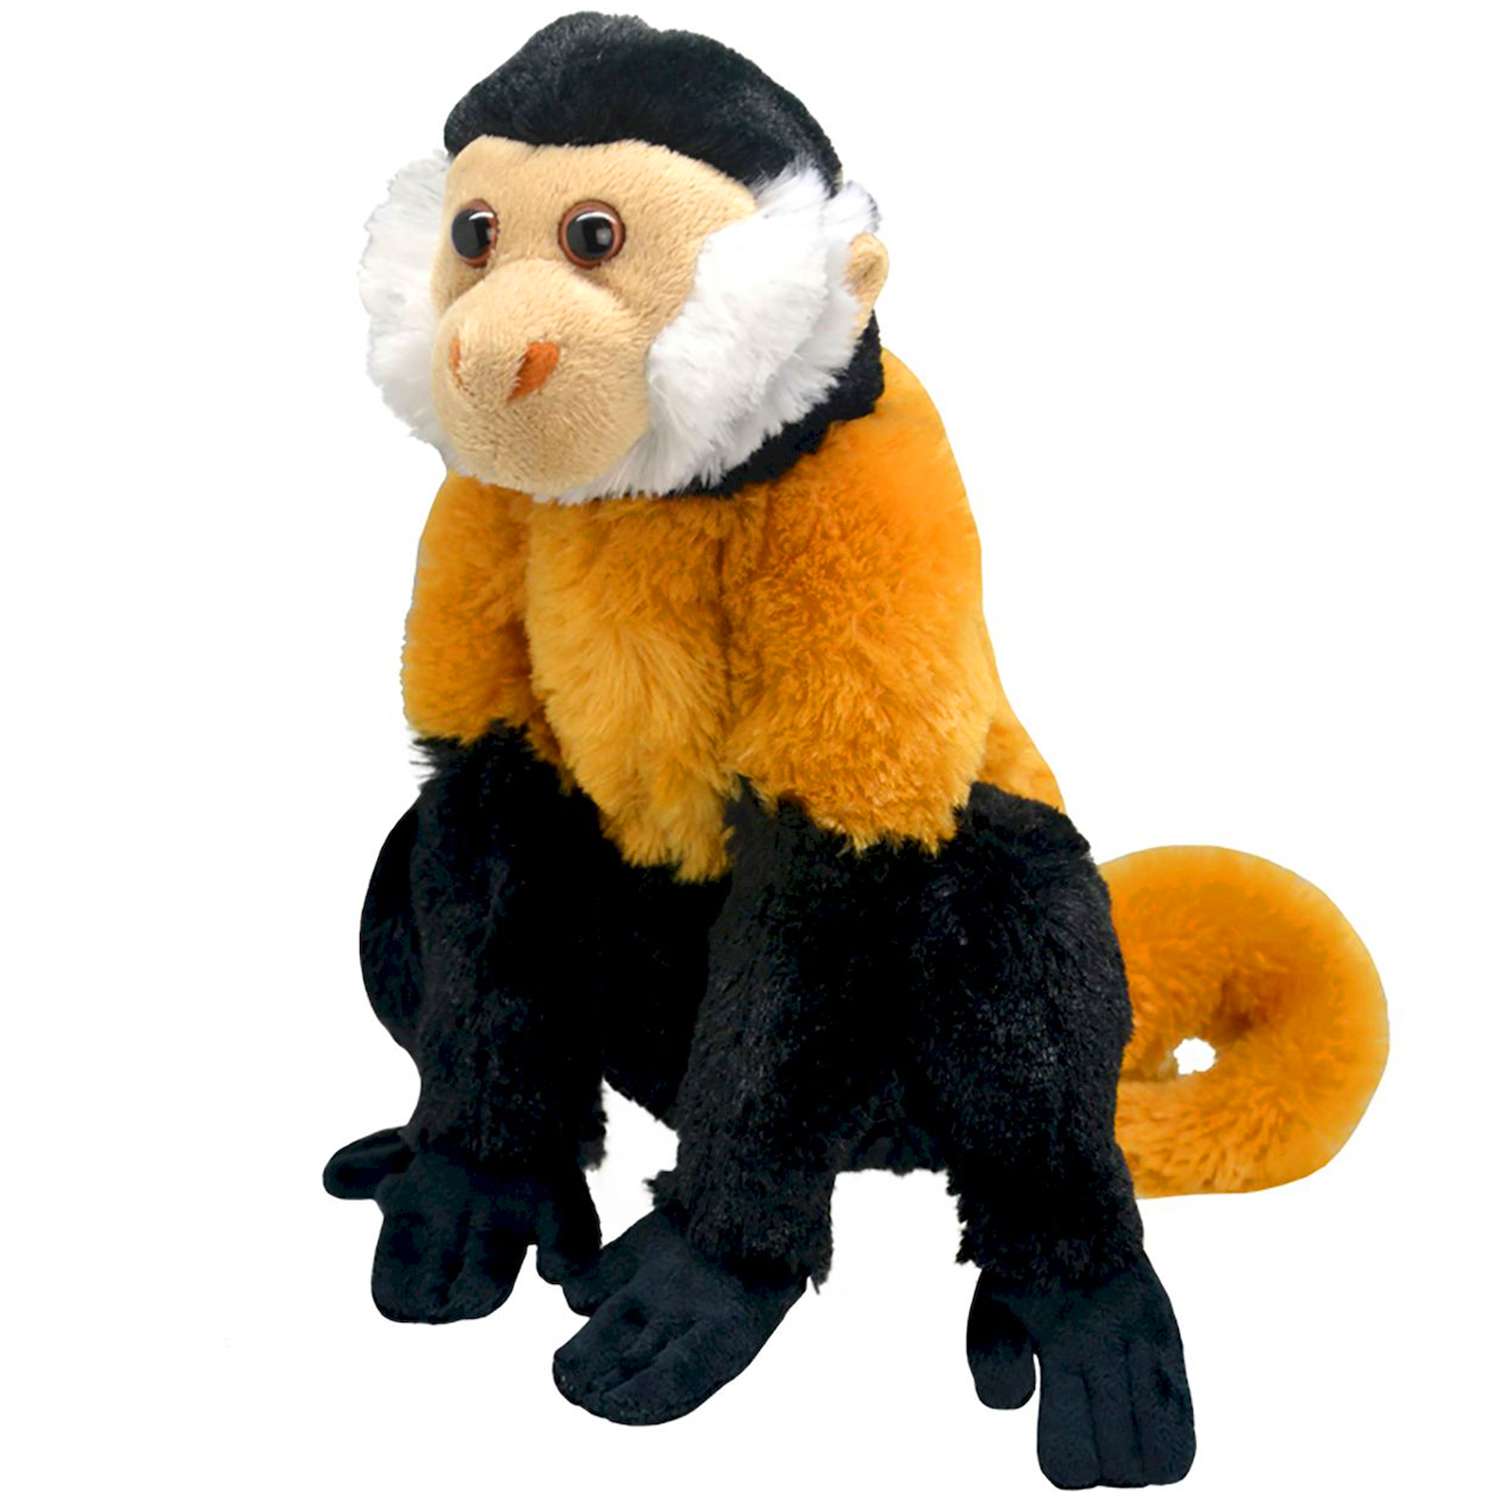 Мягкие игрушки Обезьяны и обезьянки, купить обезьянку